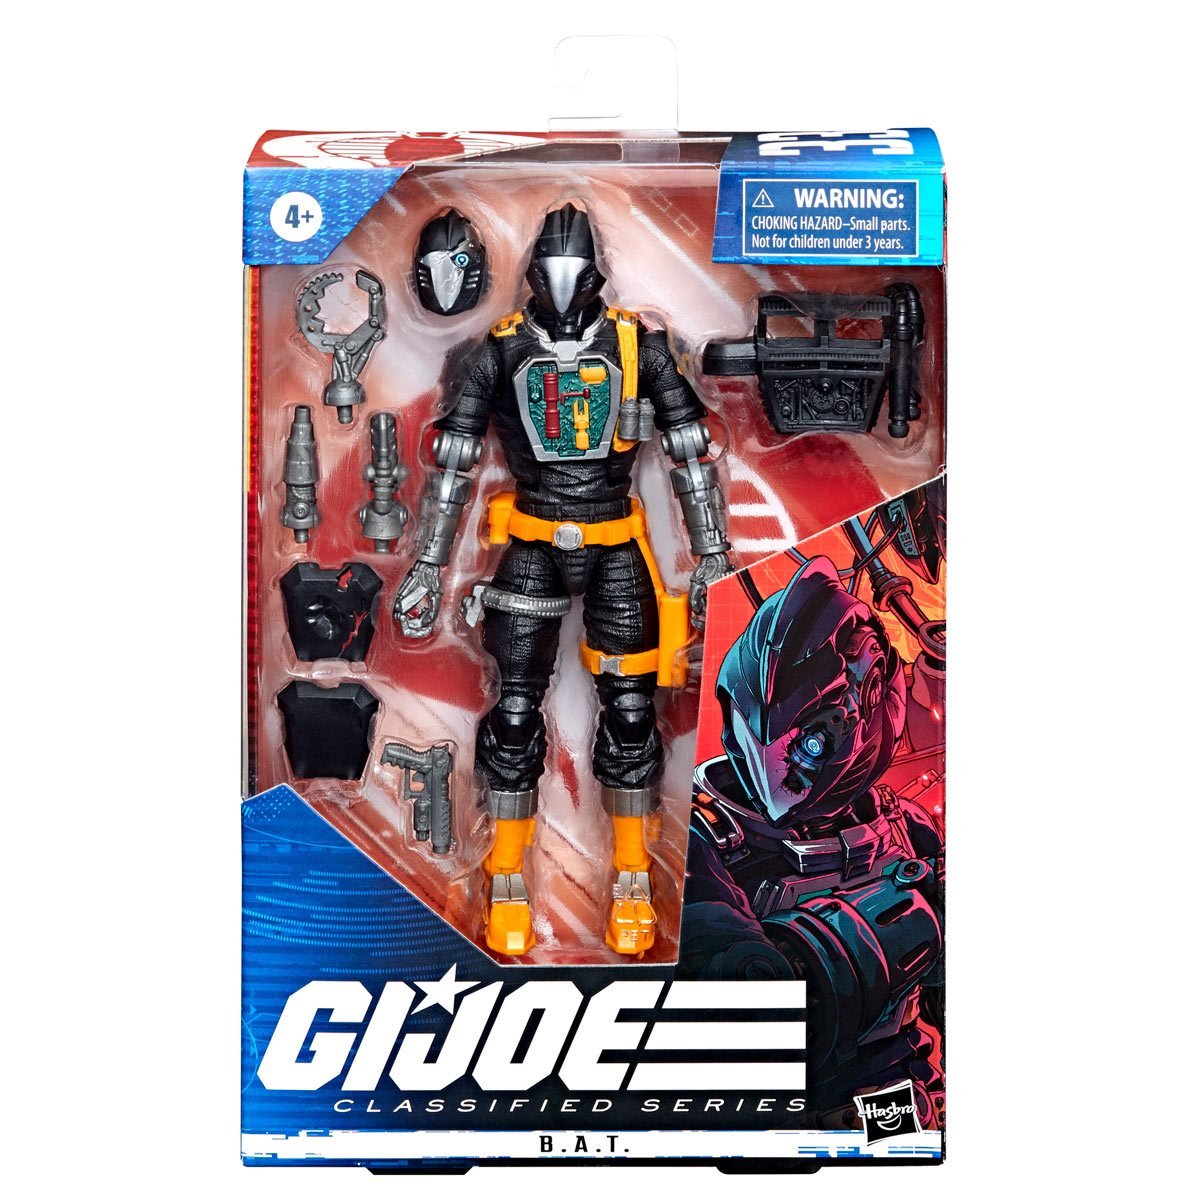 G.I. Joe Classified Series Cobra B.A.T. Hasbro No Protector Case